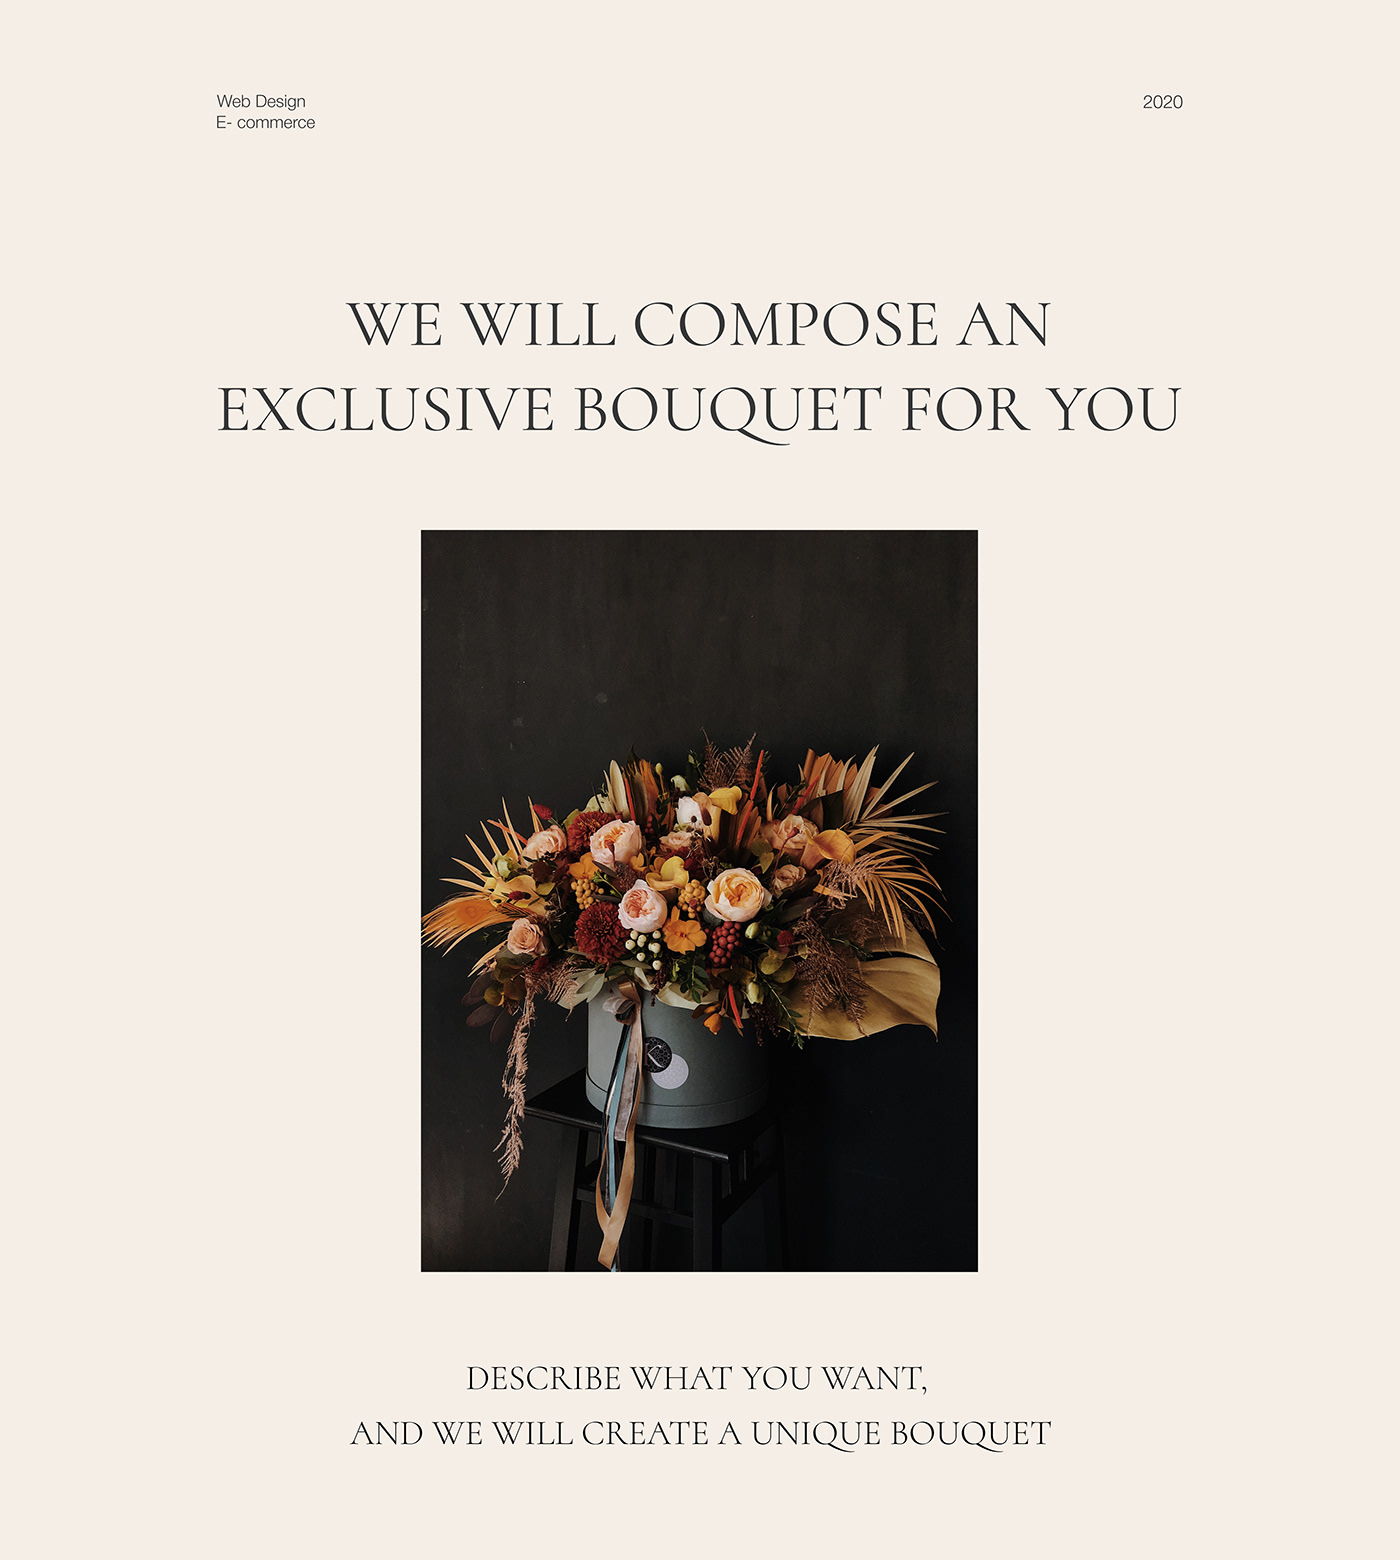 Ecommerce Flowers shop Web Design 